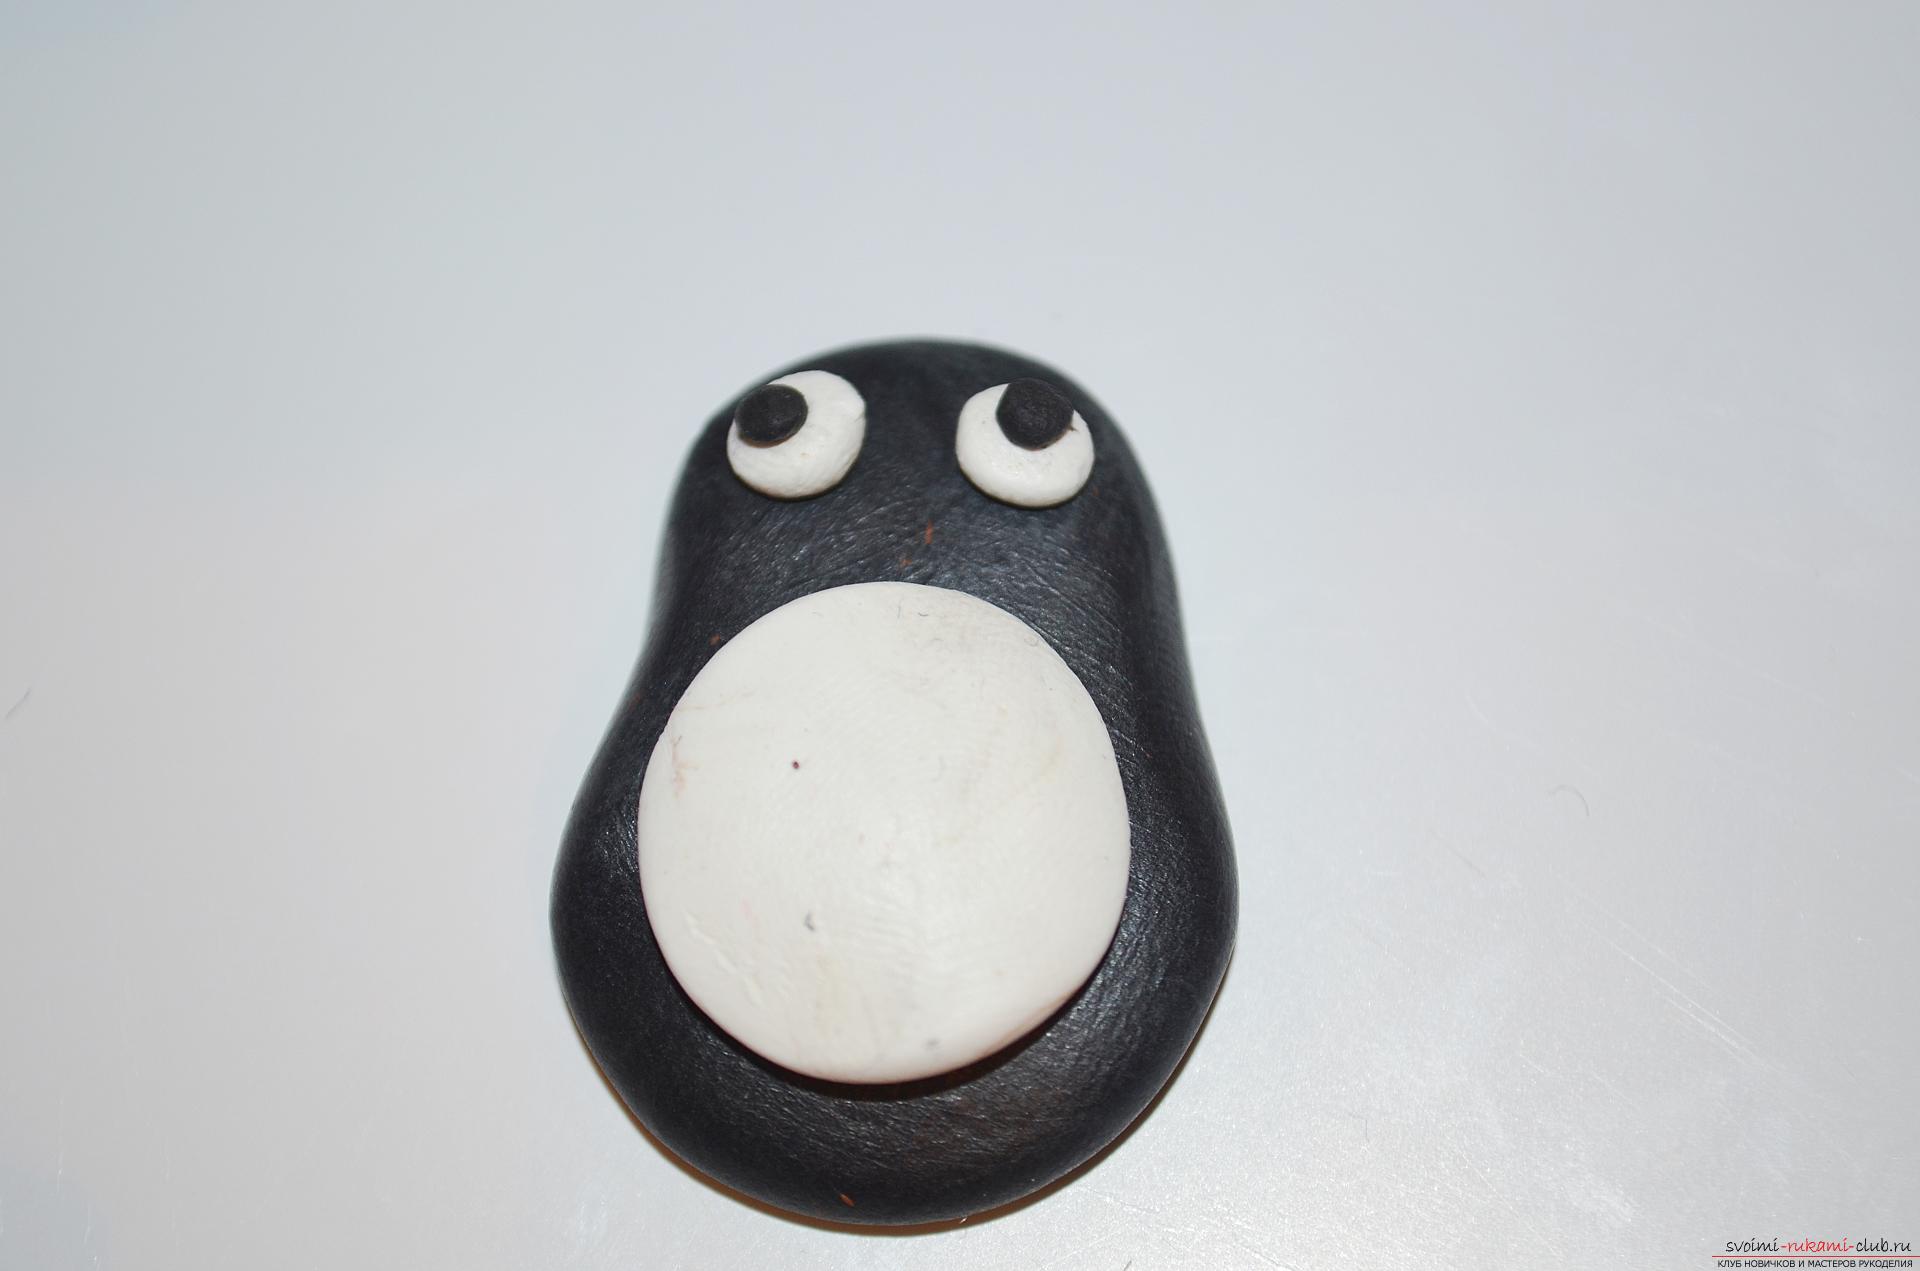 Фото к уроку лепки из полимерной глины пингвина. Фото №7